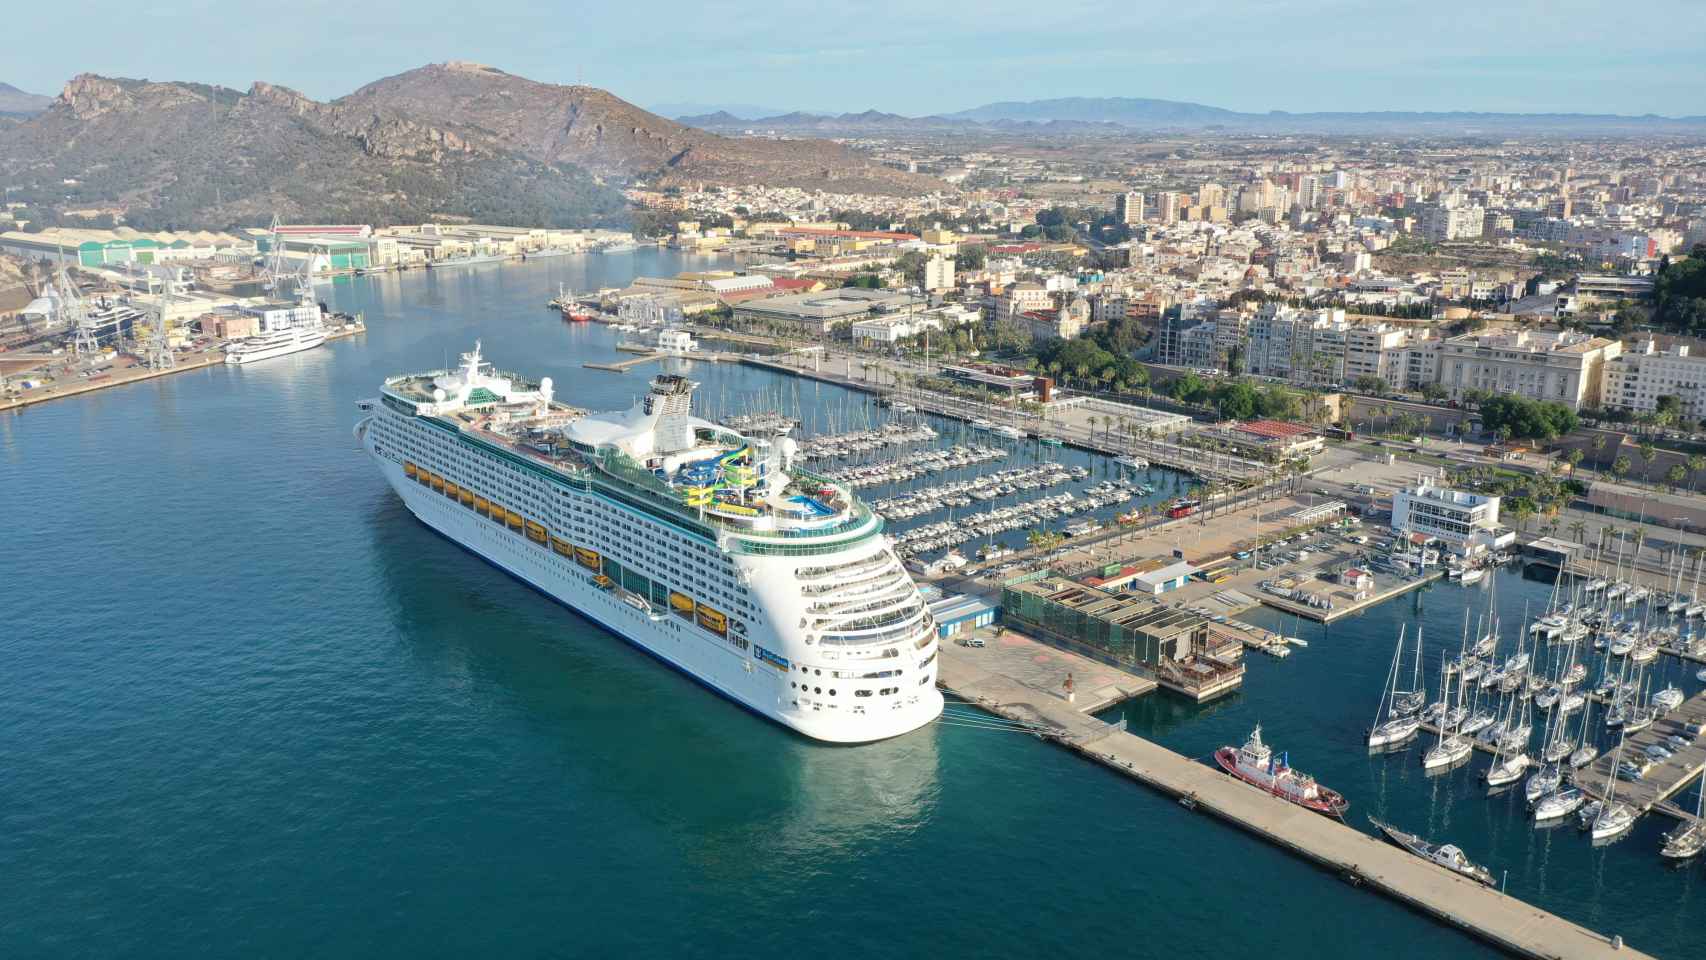 Un espectacular crucero atracado en el puerto de Cartagena.